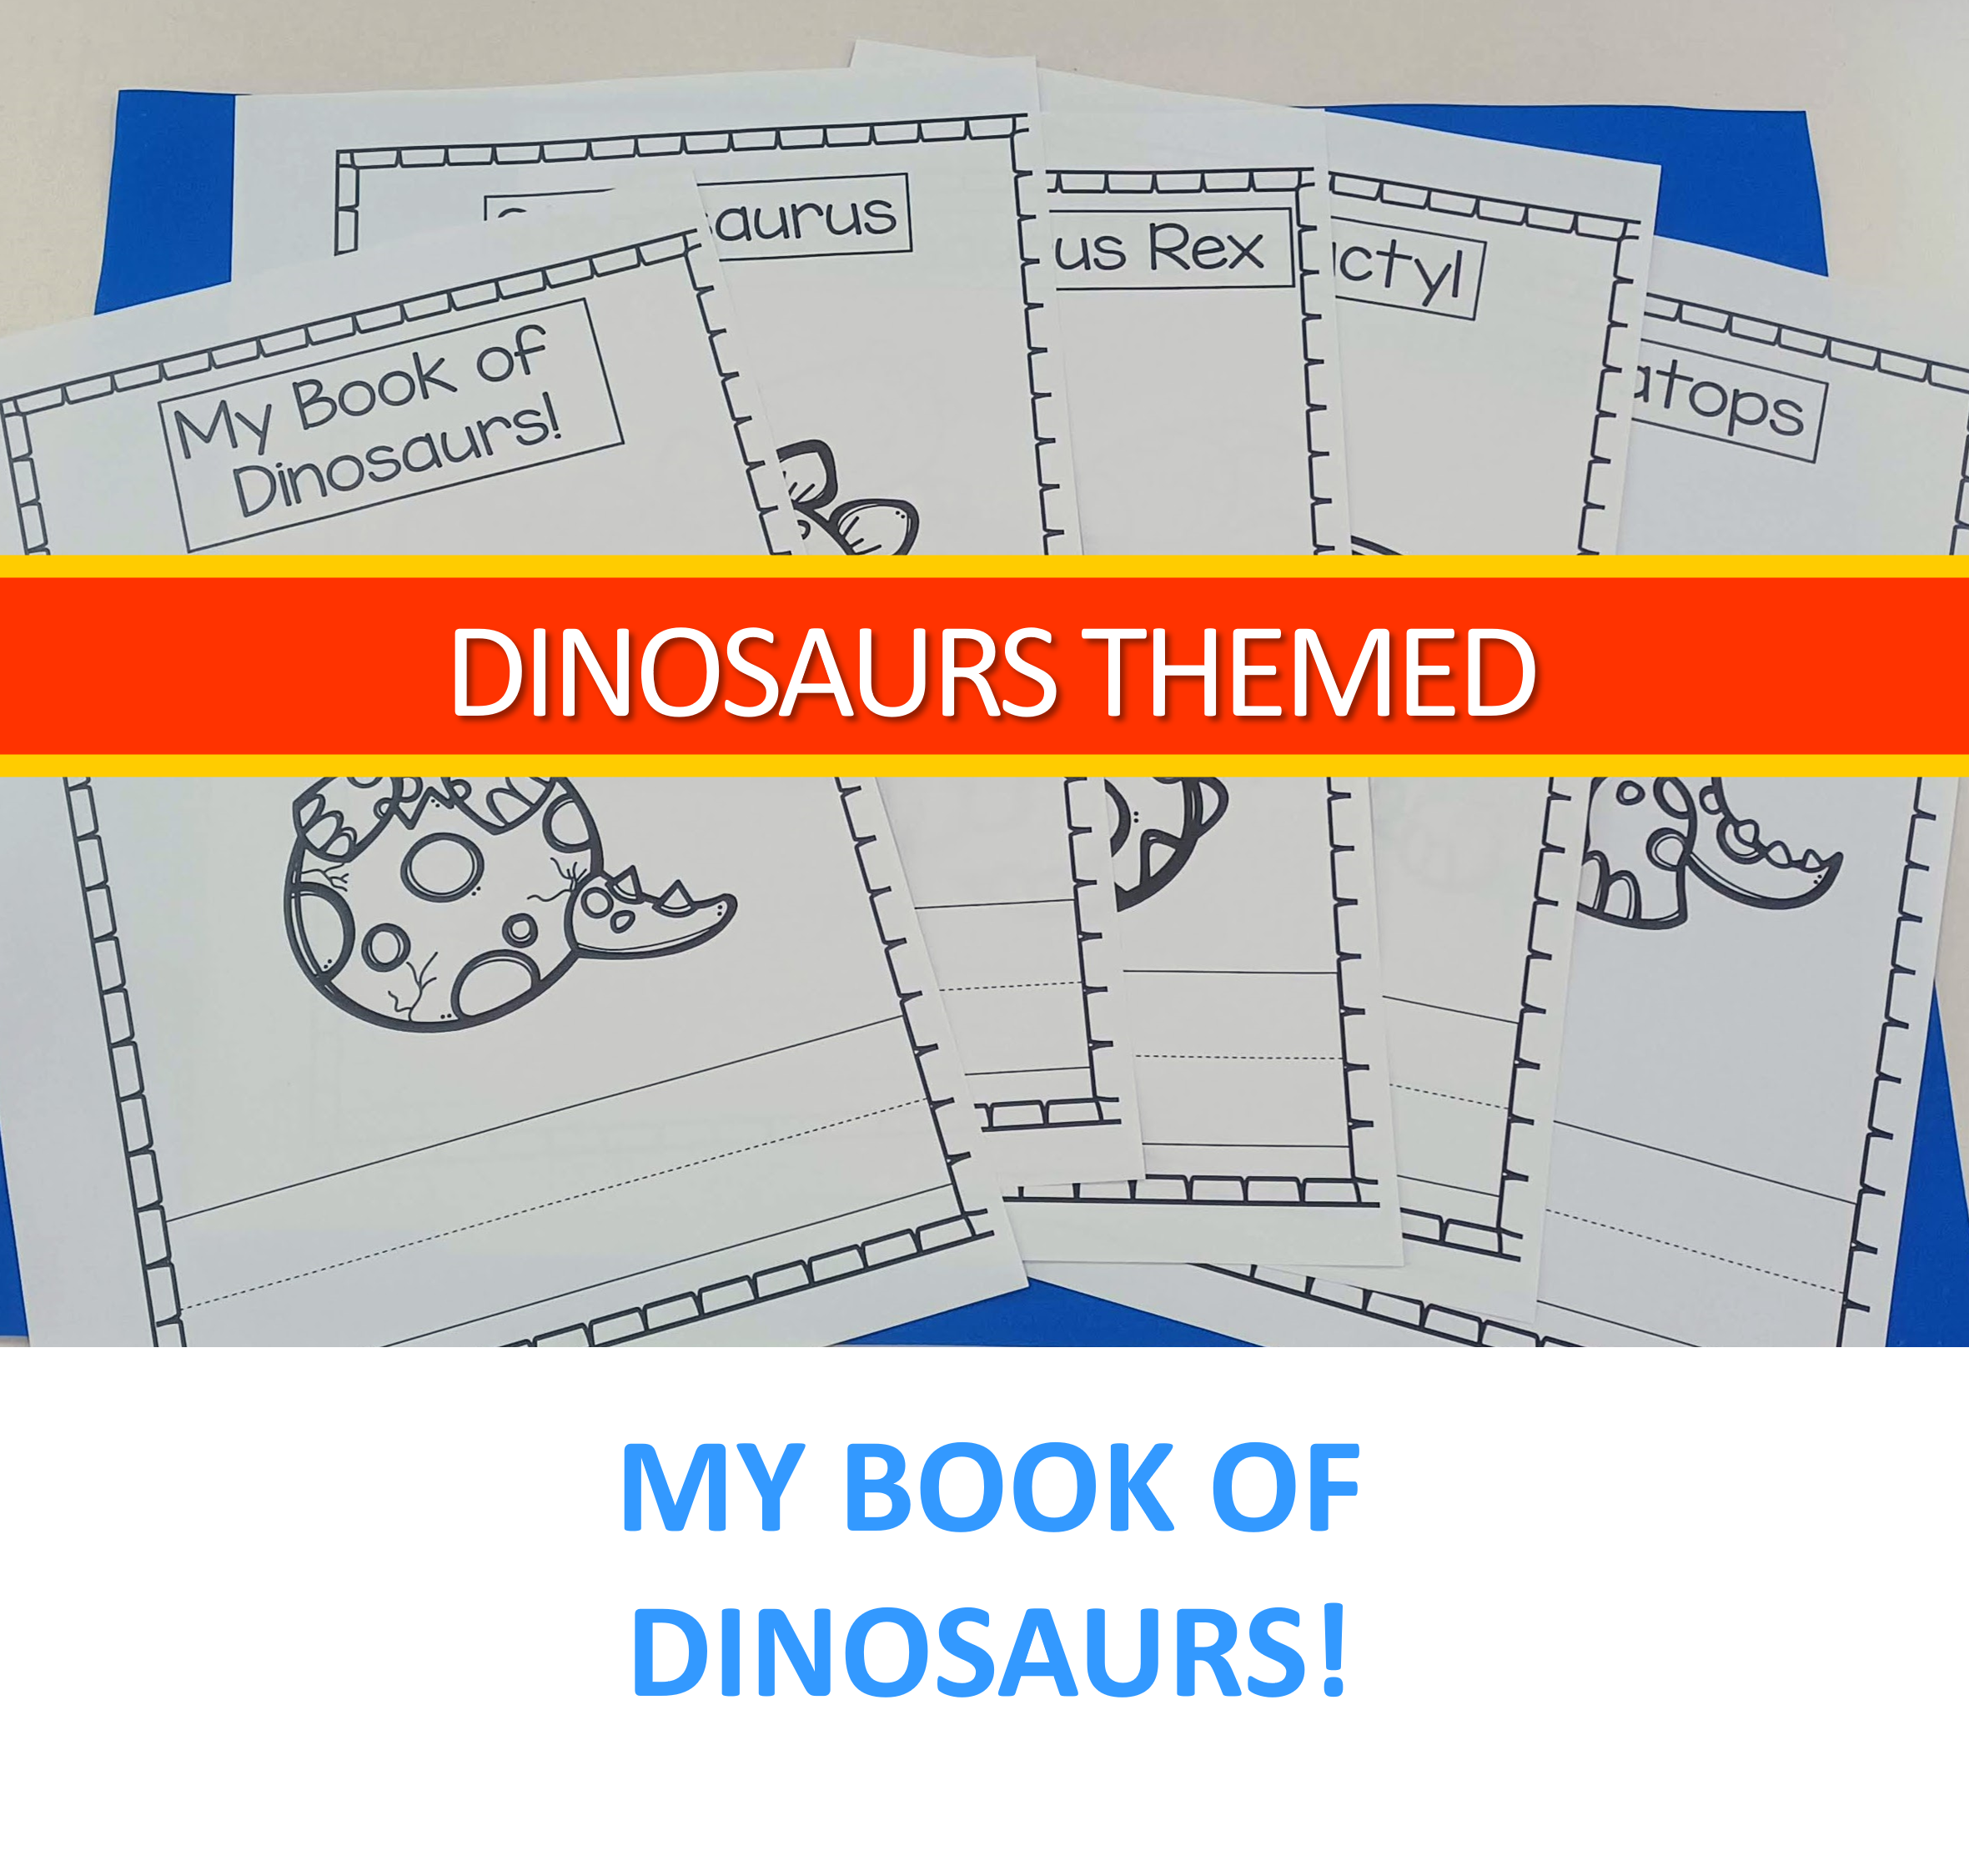 Dinosaur themed activities